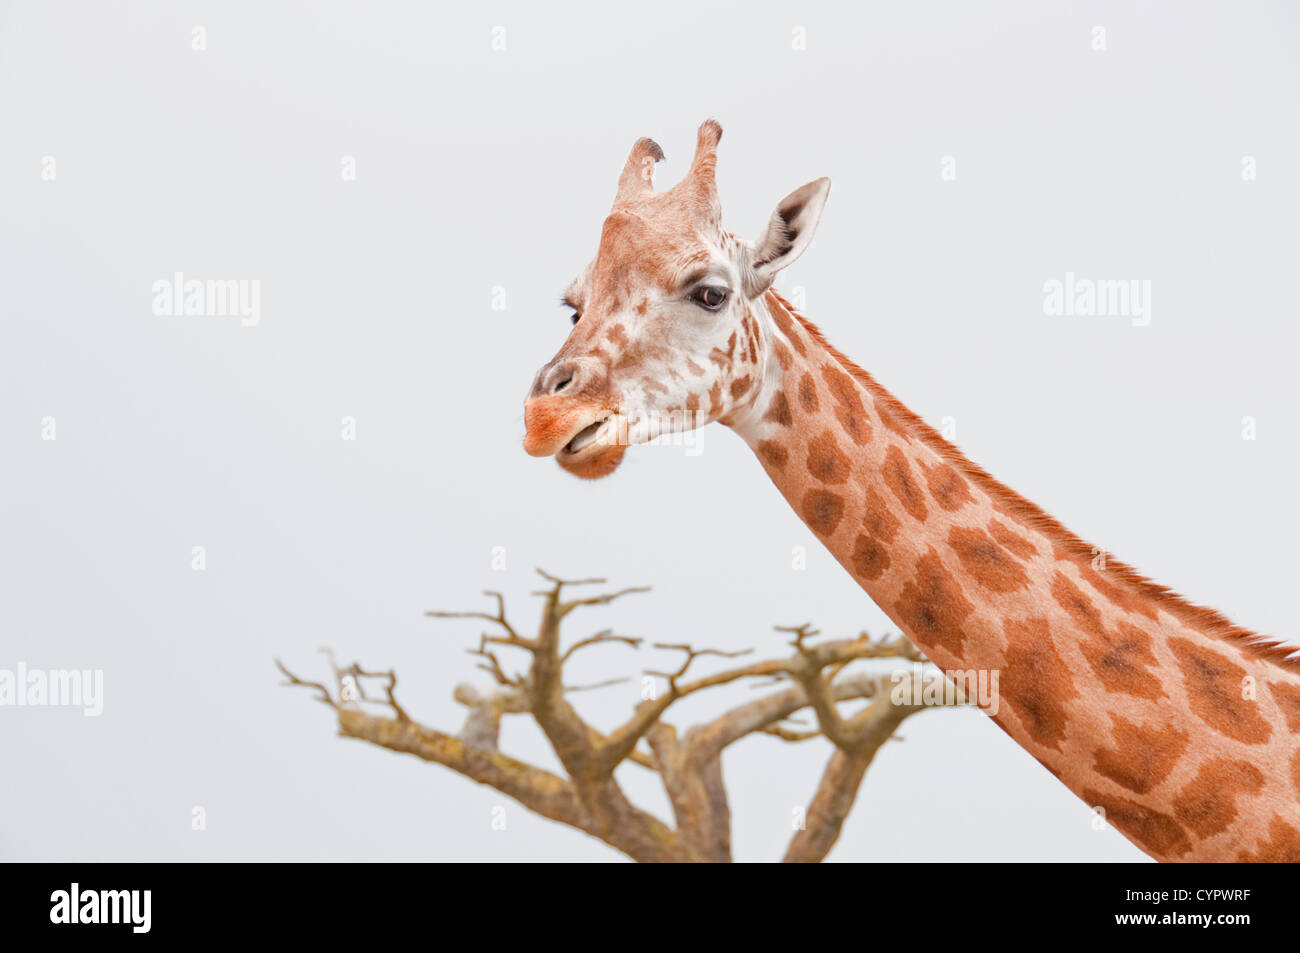 Le cou et la tête d'une girafe avec un arbre dans l'arrière-plan Banque D'Images